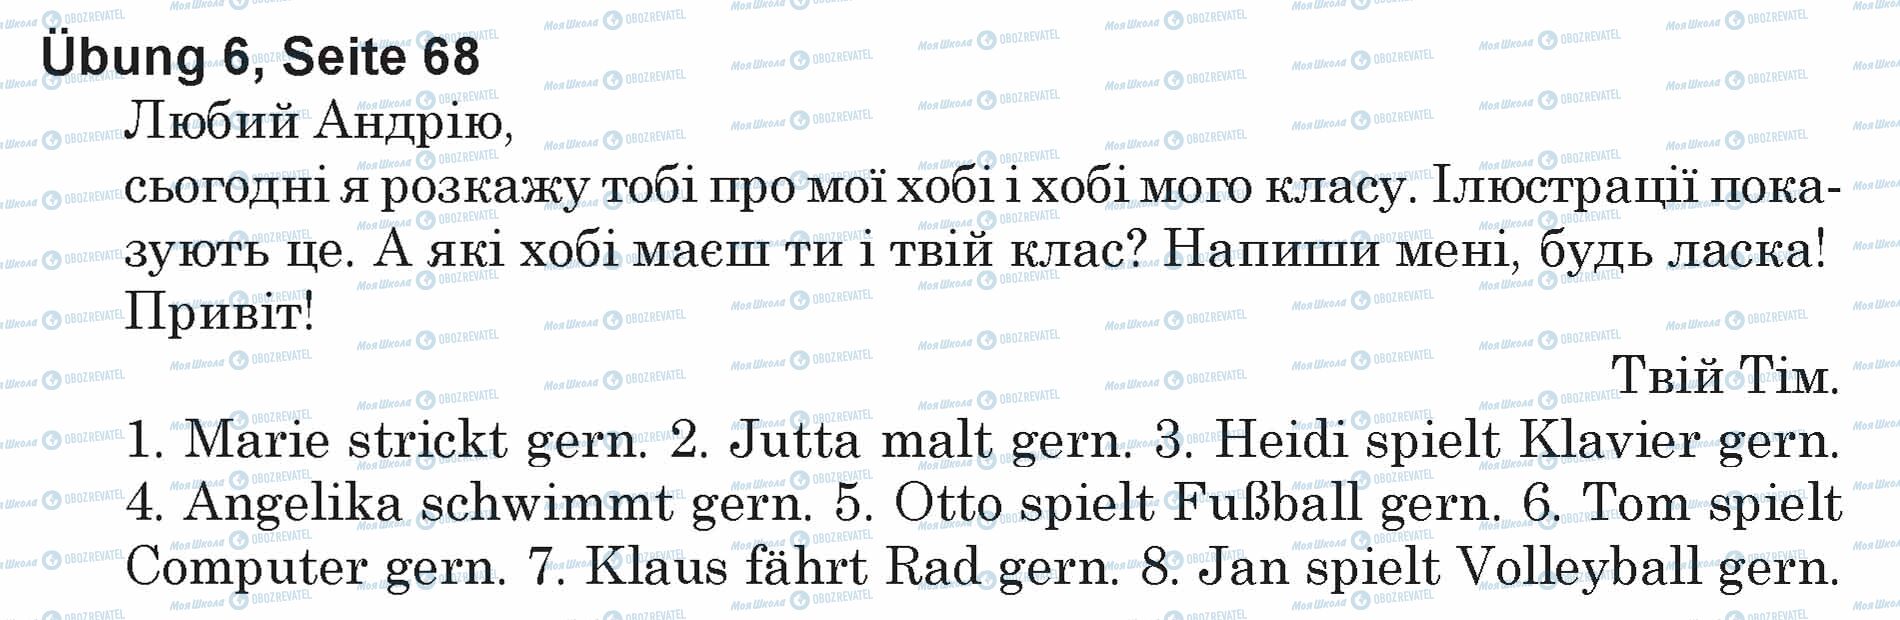 ГДЗ Немецкий язык 5 класс страница Ubung 6, Seite 68